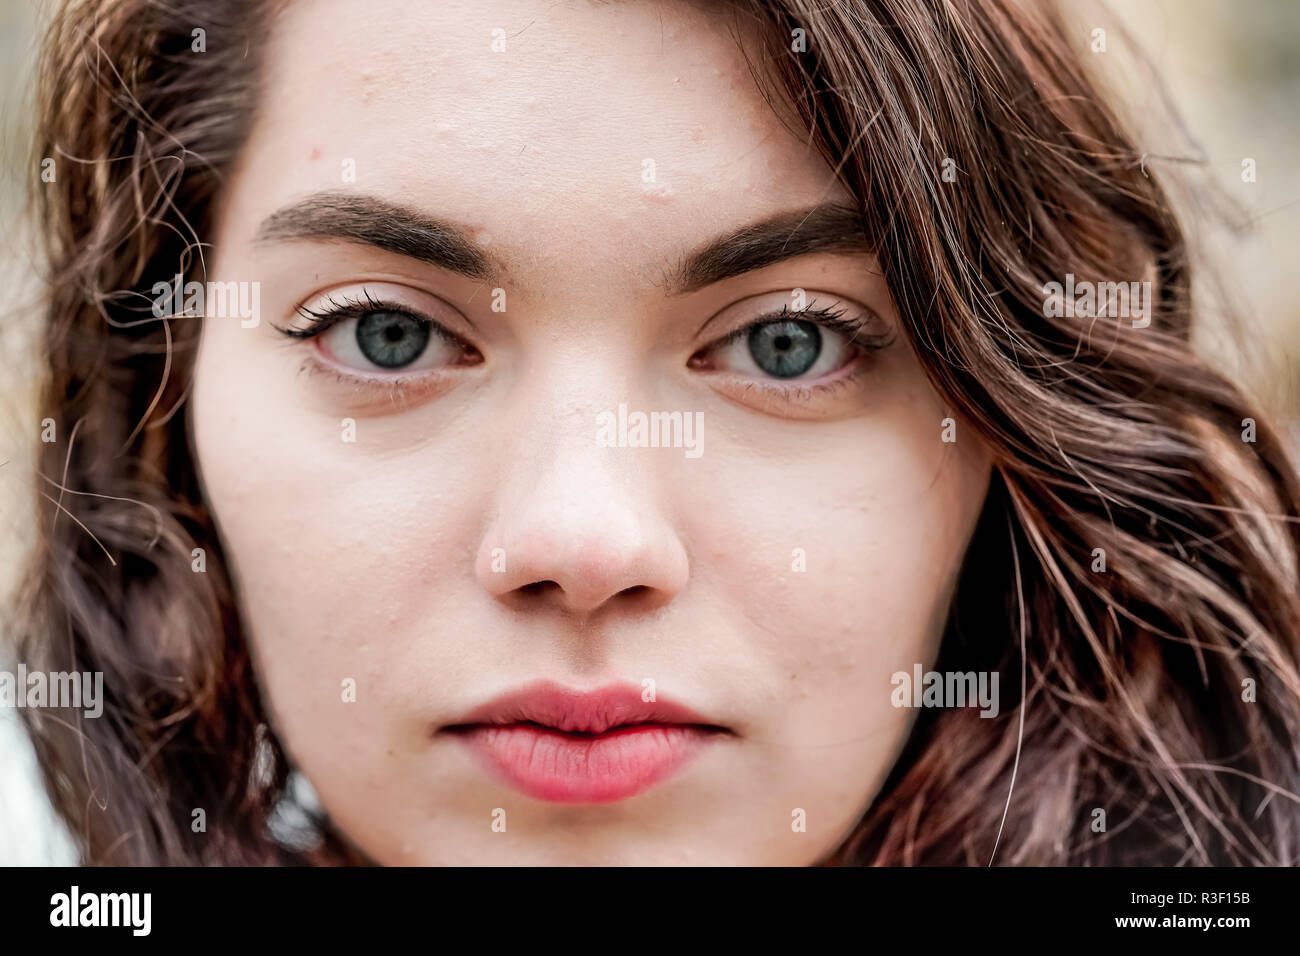 Les yeux bleus fille russe, closeup portrait shoot, mannequin blond hair  girl Photo Stock - Alamy